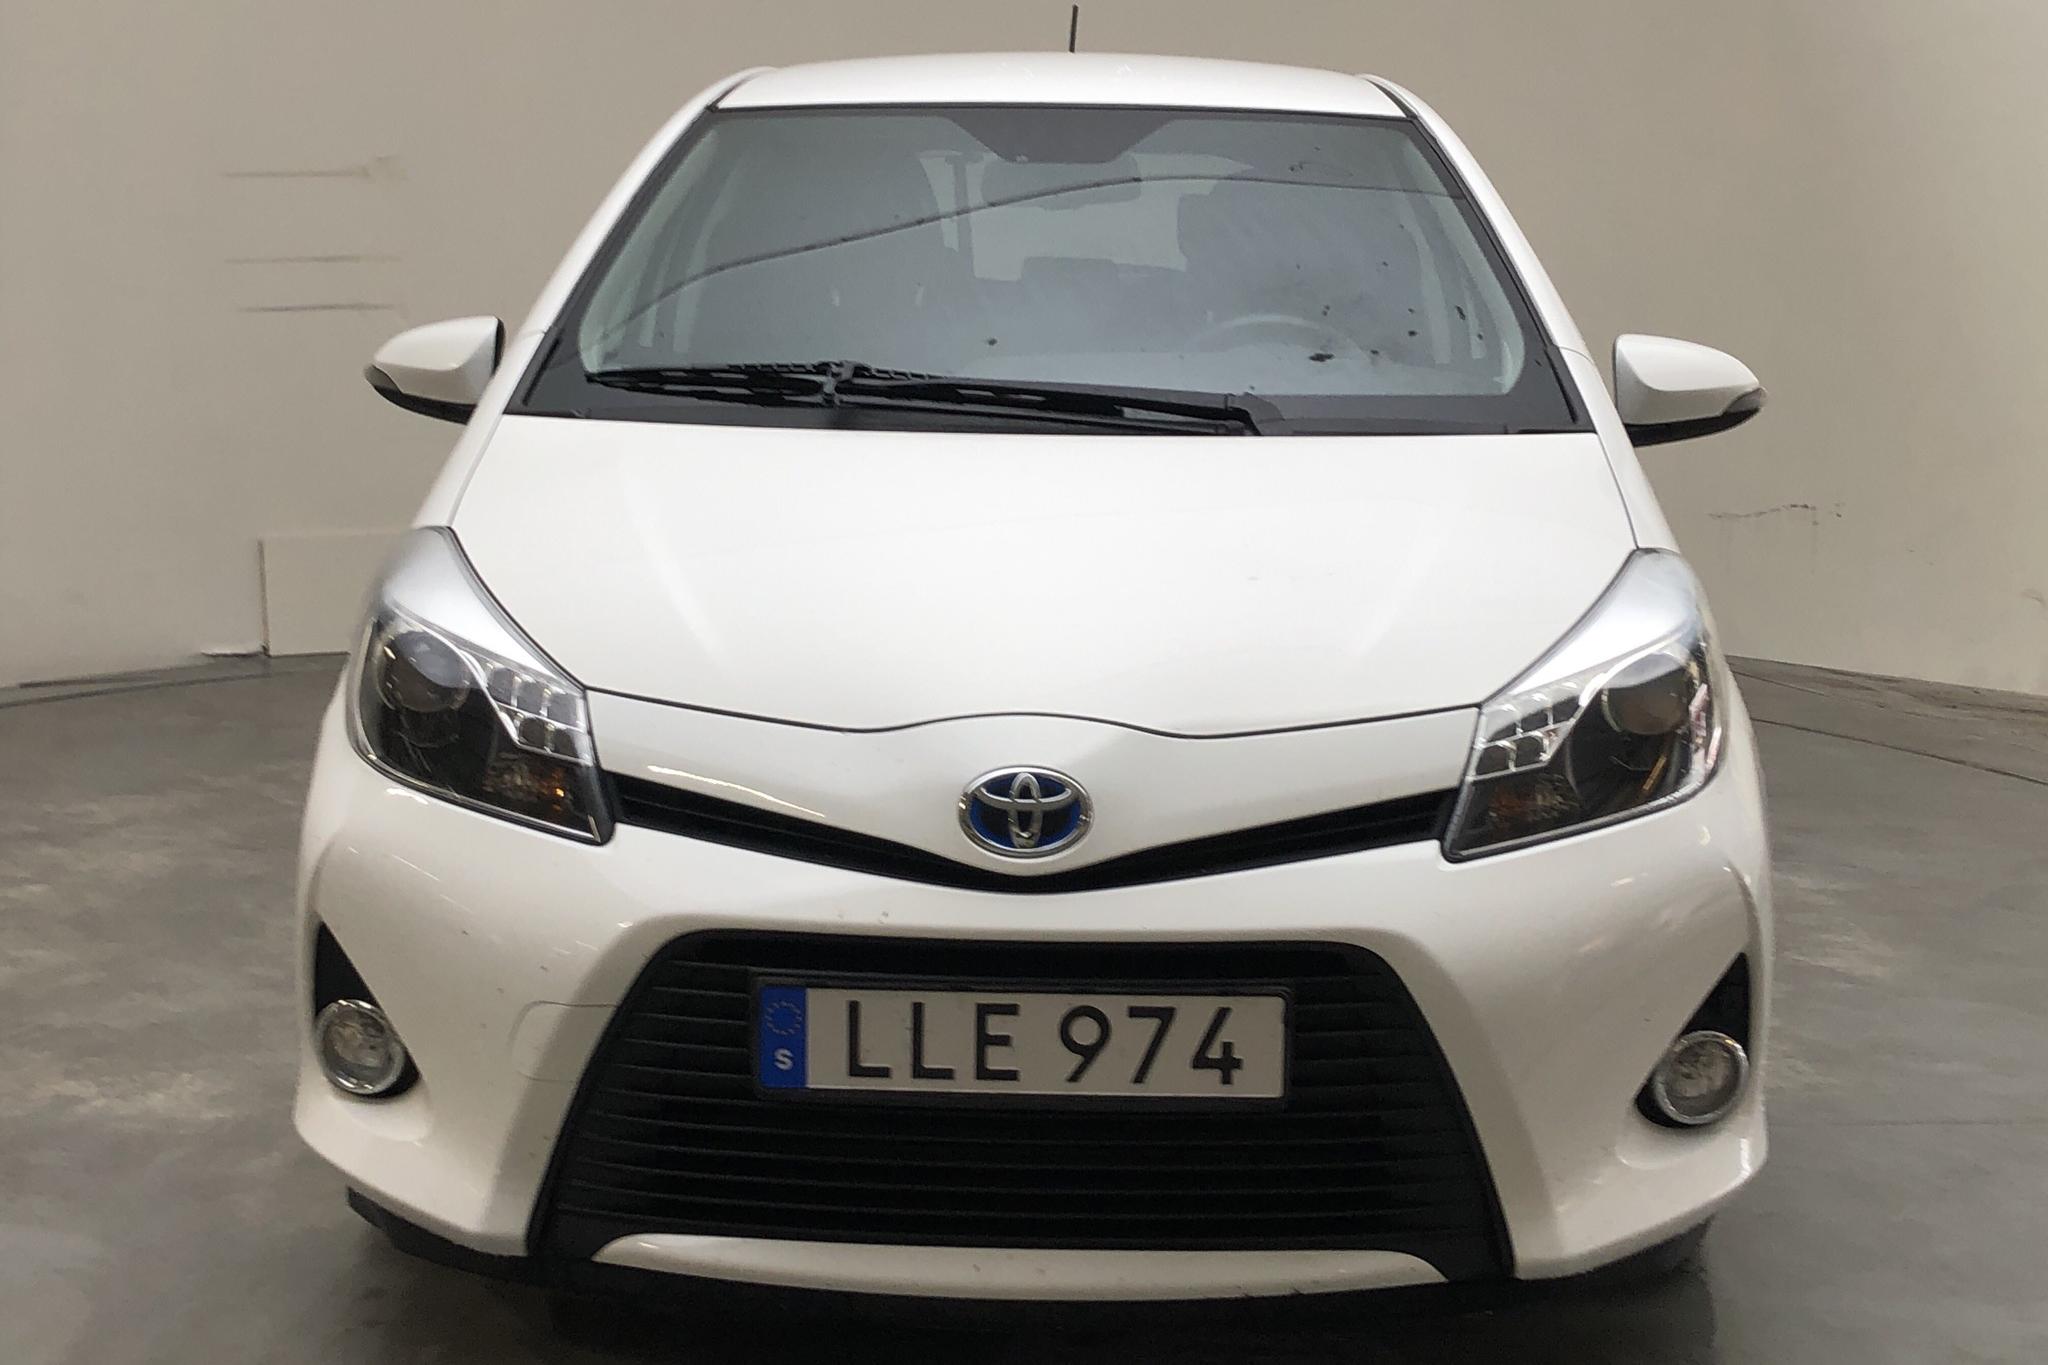 Toyota Yaris 1.5 HSD 5dr (75hk) - 83 430 km - Automatic - white - 2014